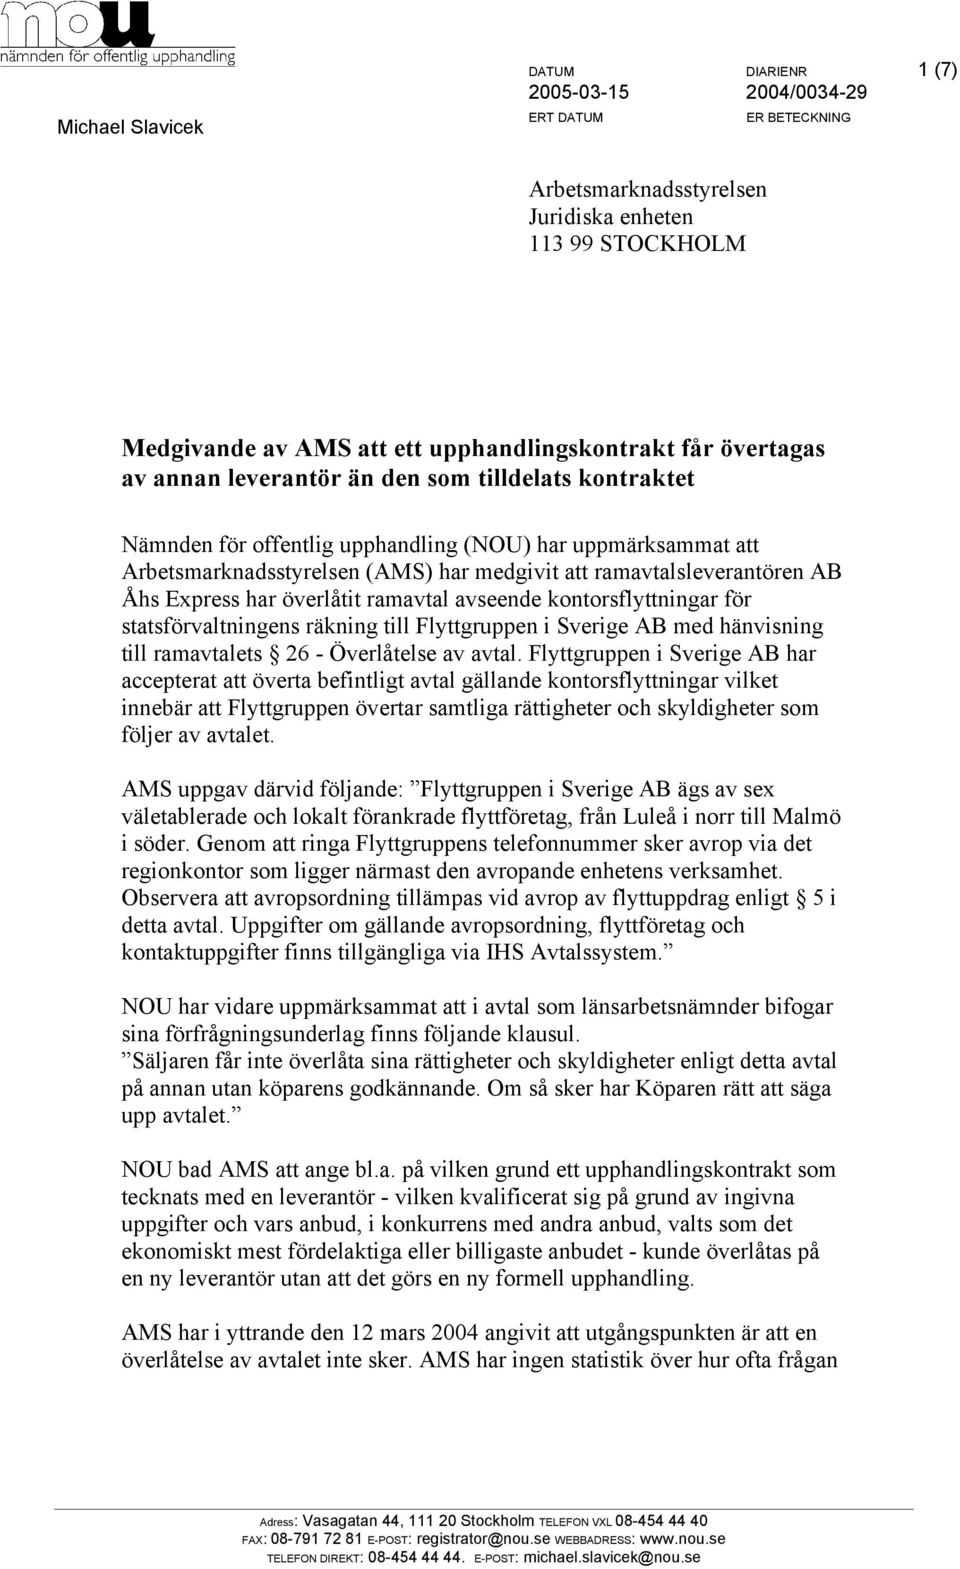 kontorsflyttningar för statsförvaltningens räkning till Flyttgruppen i Sverige AB med hänvisning till ramavtalets 26 - Överlåtelse av avtal.